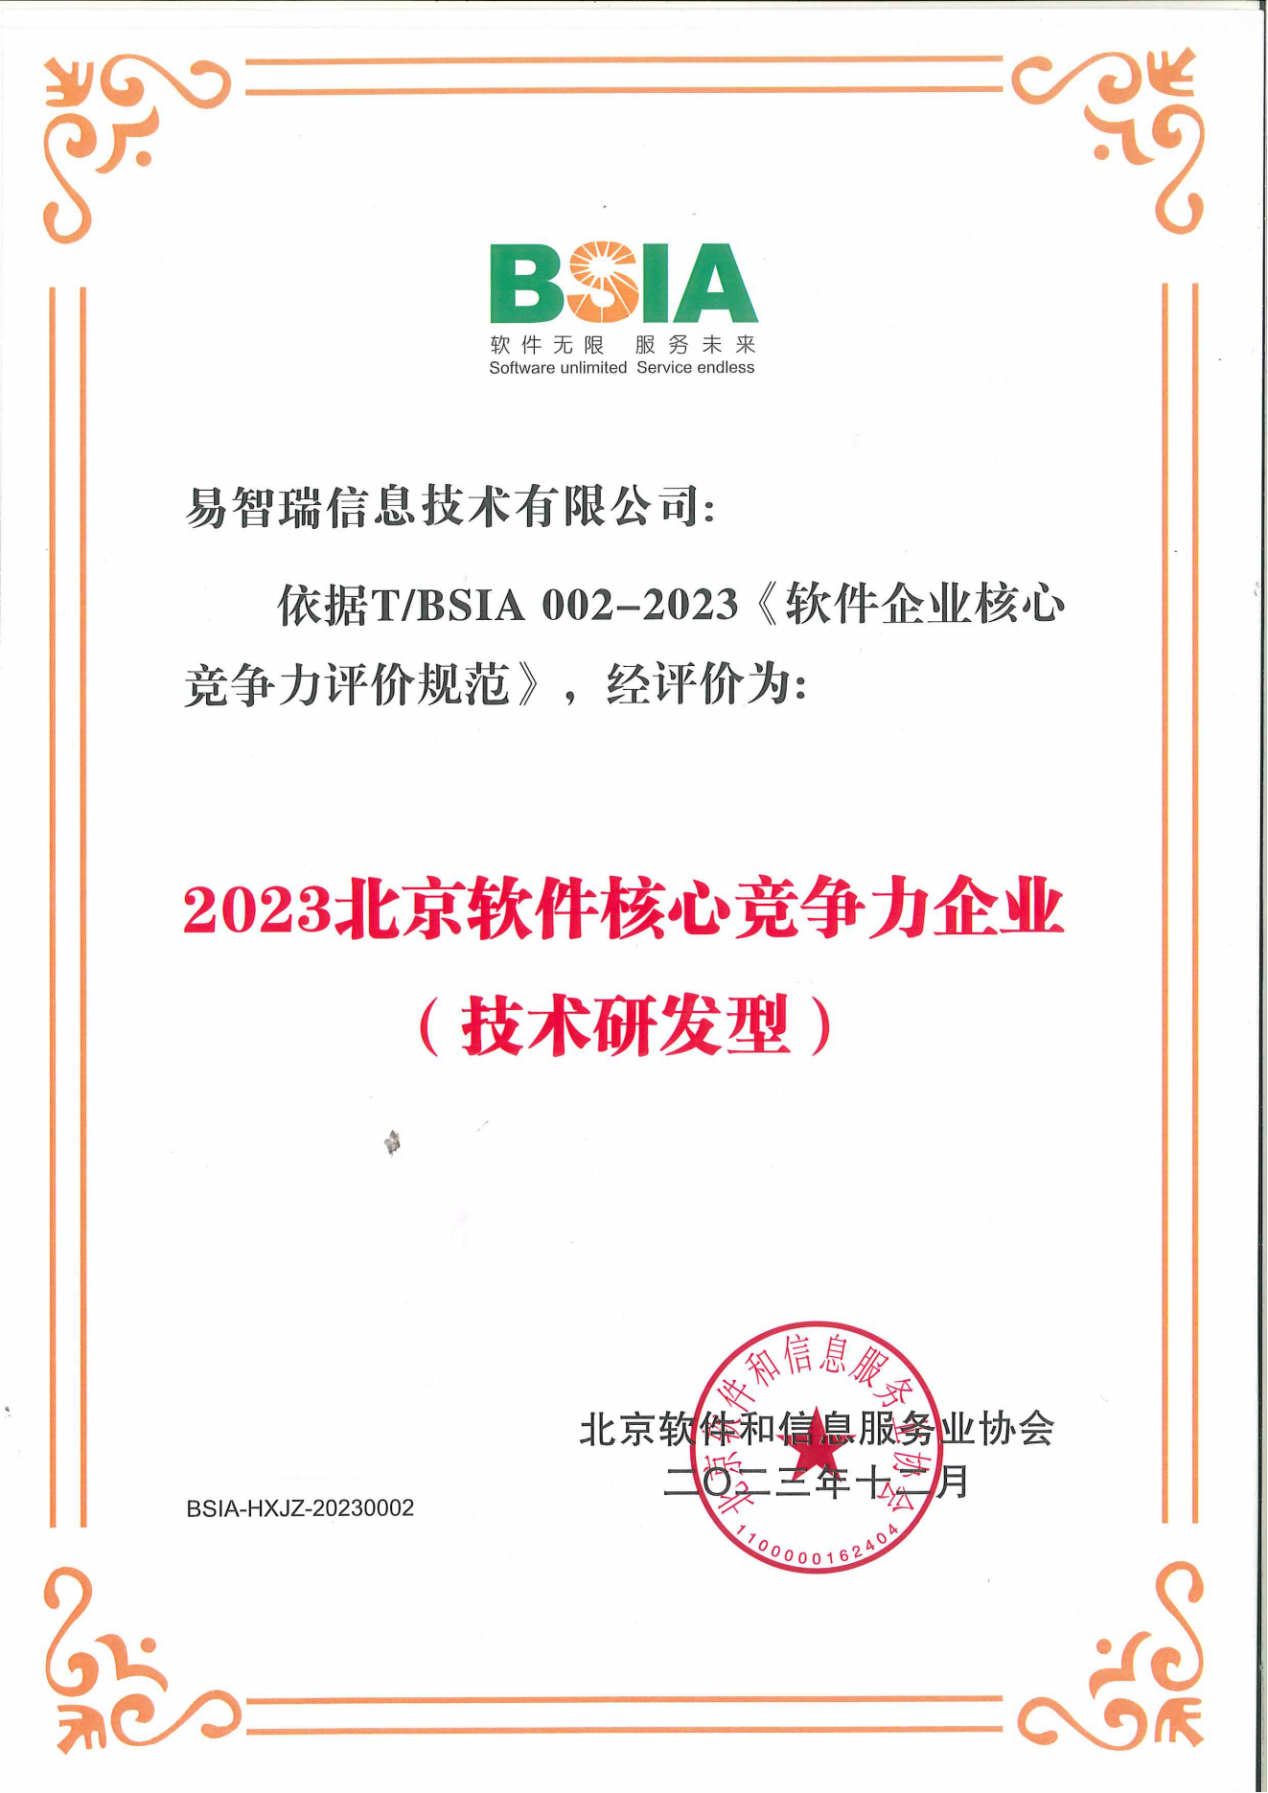 易智瑞公司获得“2023北京软件核心竞争力企业（技术研发型）”称号